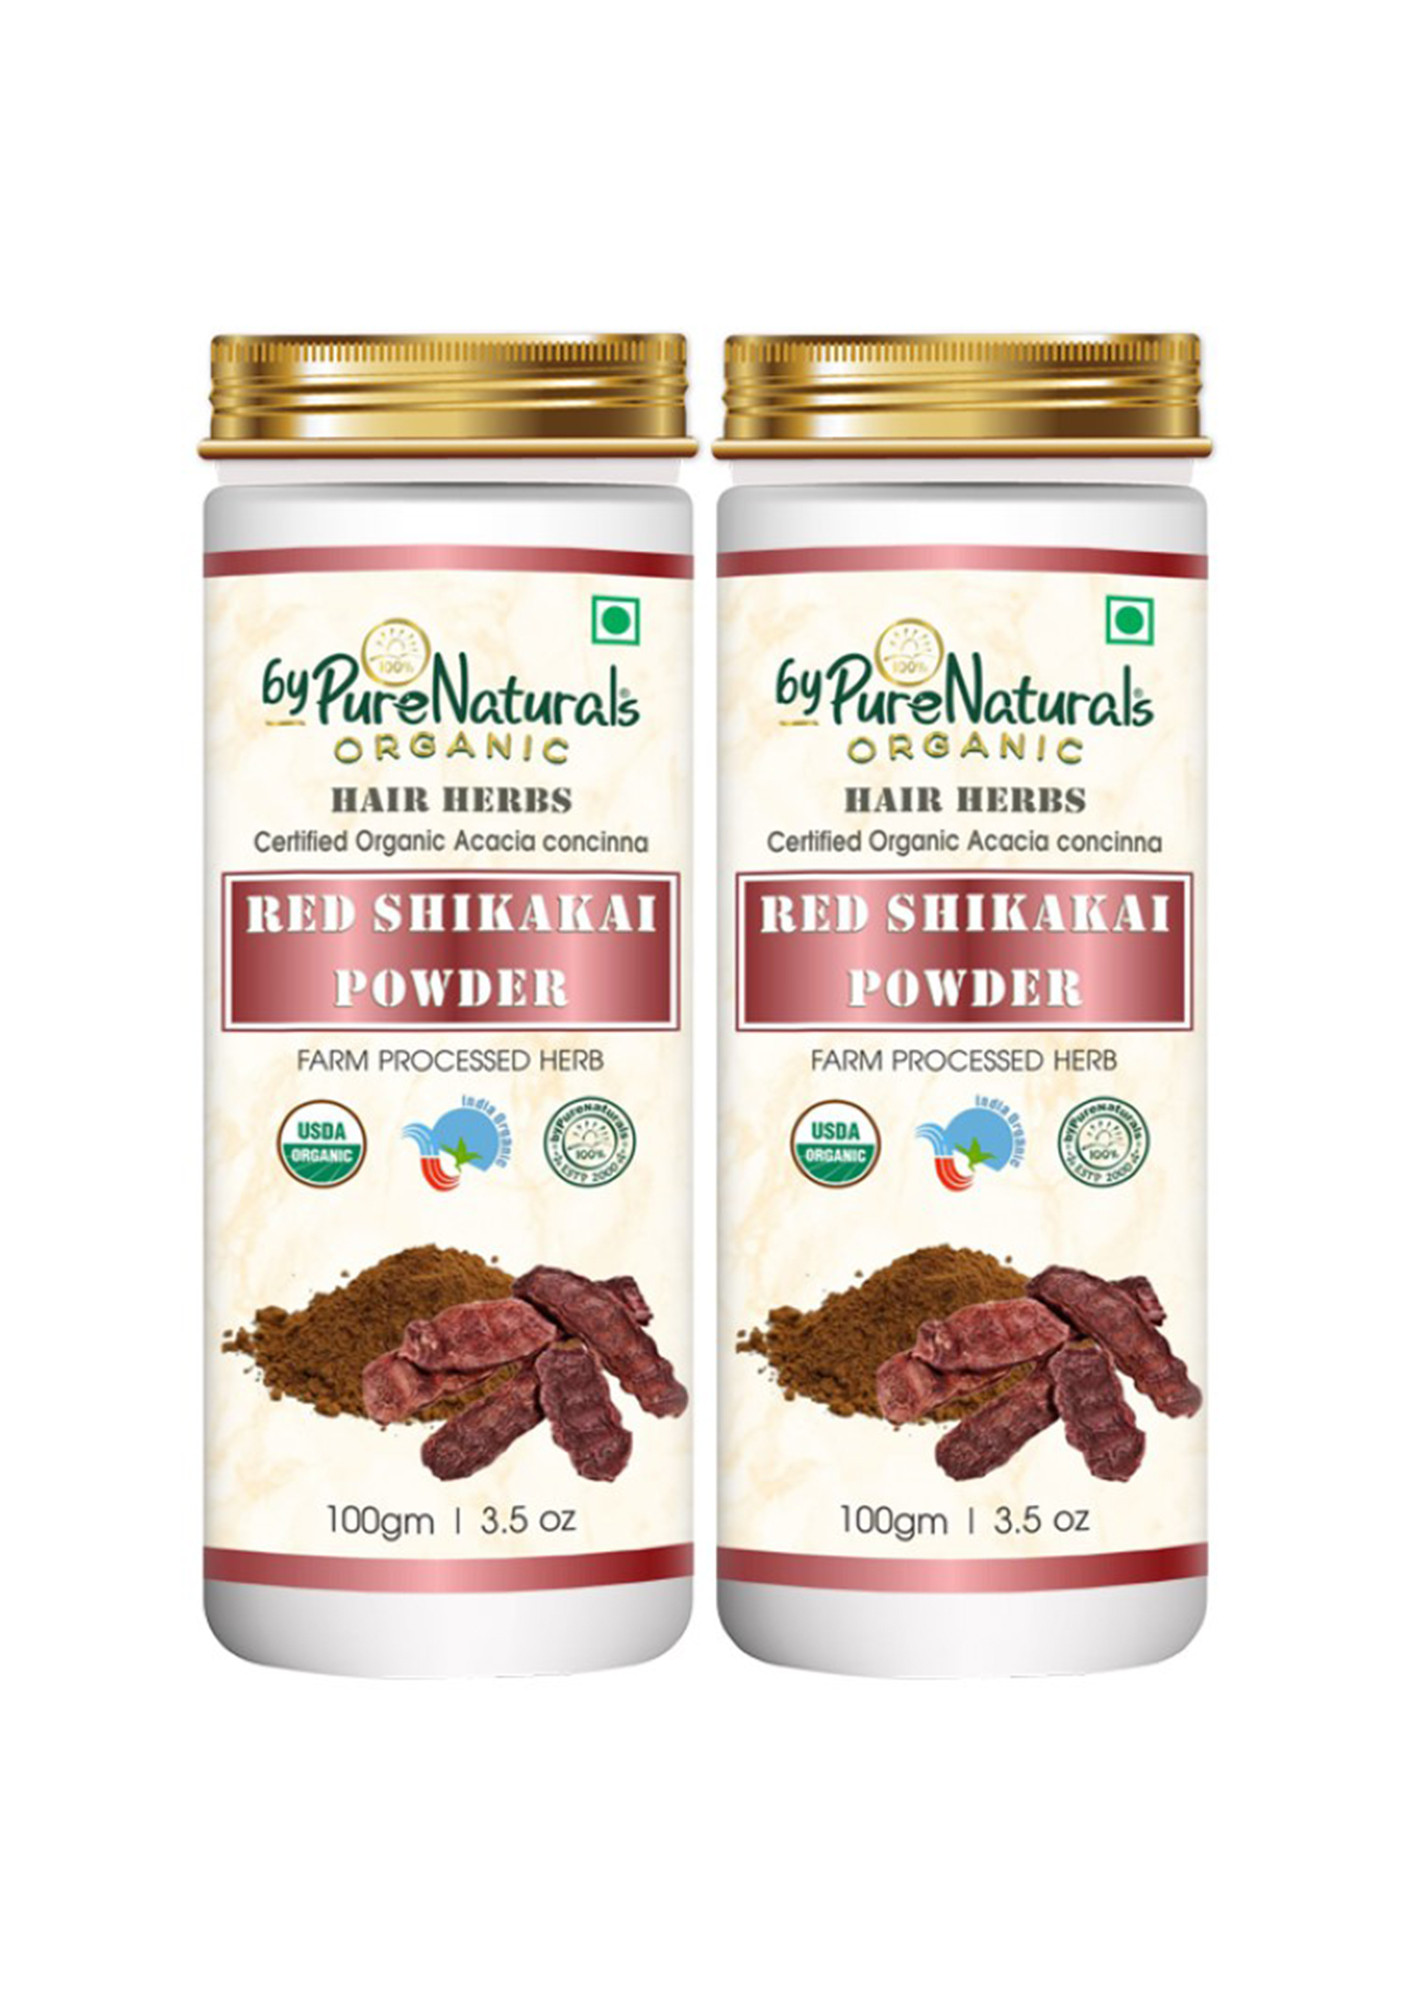 ByPureNaturals 100% Natural Herbal Organic Red Shikakai Powder 100gm pack of 2